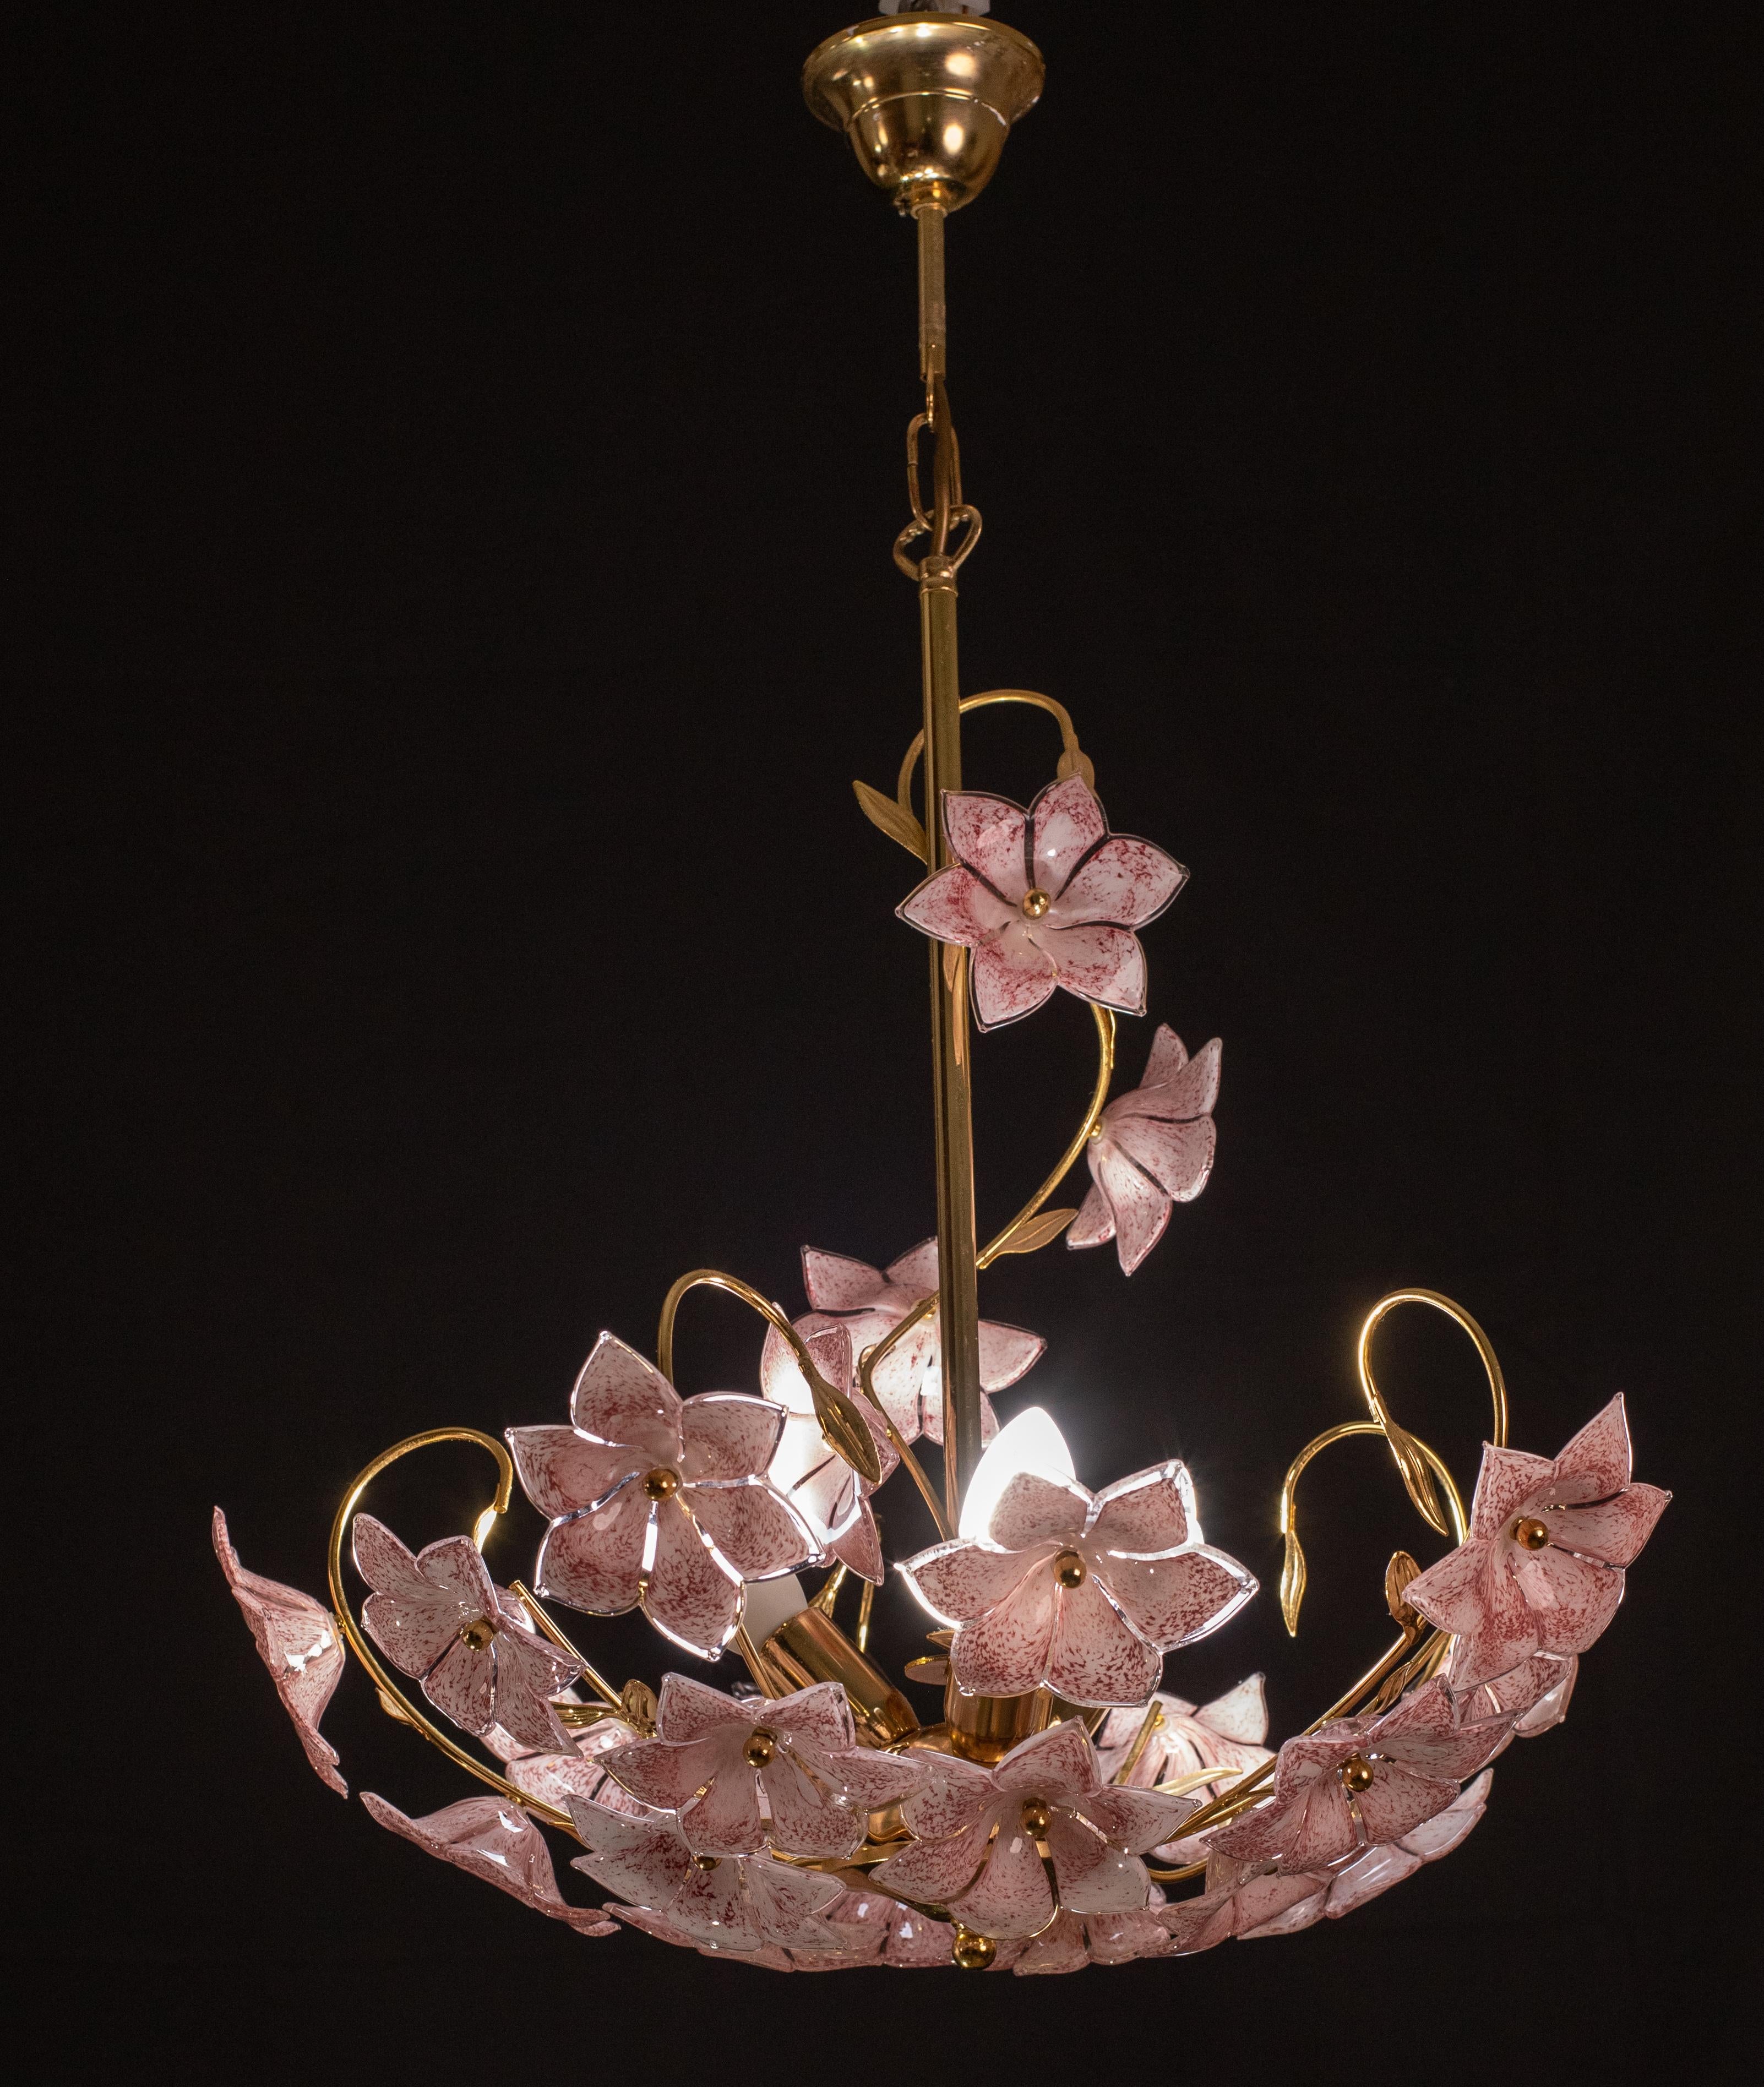 Lustre vintage en verre de Murano rempli de fleurs roses en verre de Murano.
Le lustre a 3 points lumineux avec une douille E14, possibilité de recâblage pour les normes américaines.
Le cadre est en bain d'or en bon état vintage.
La hauteur du